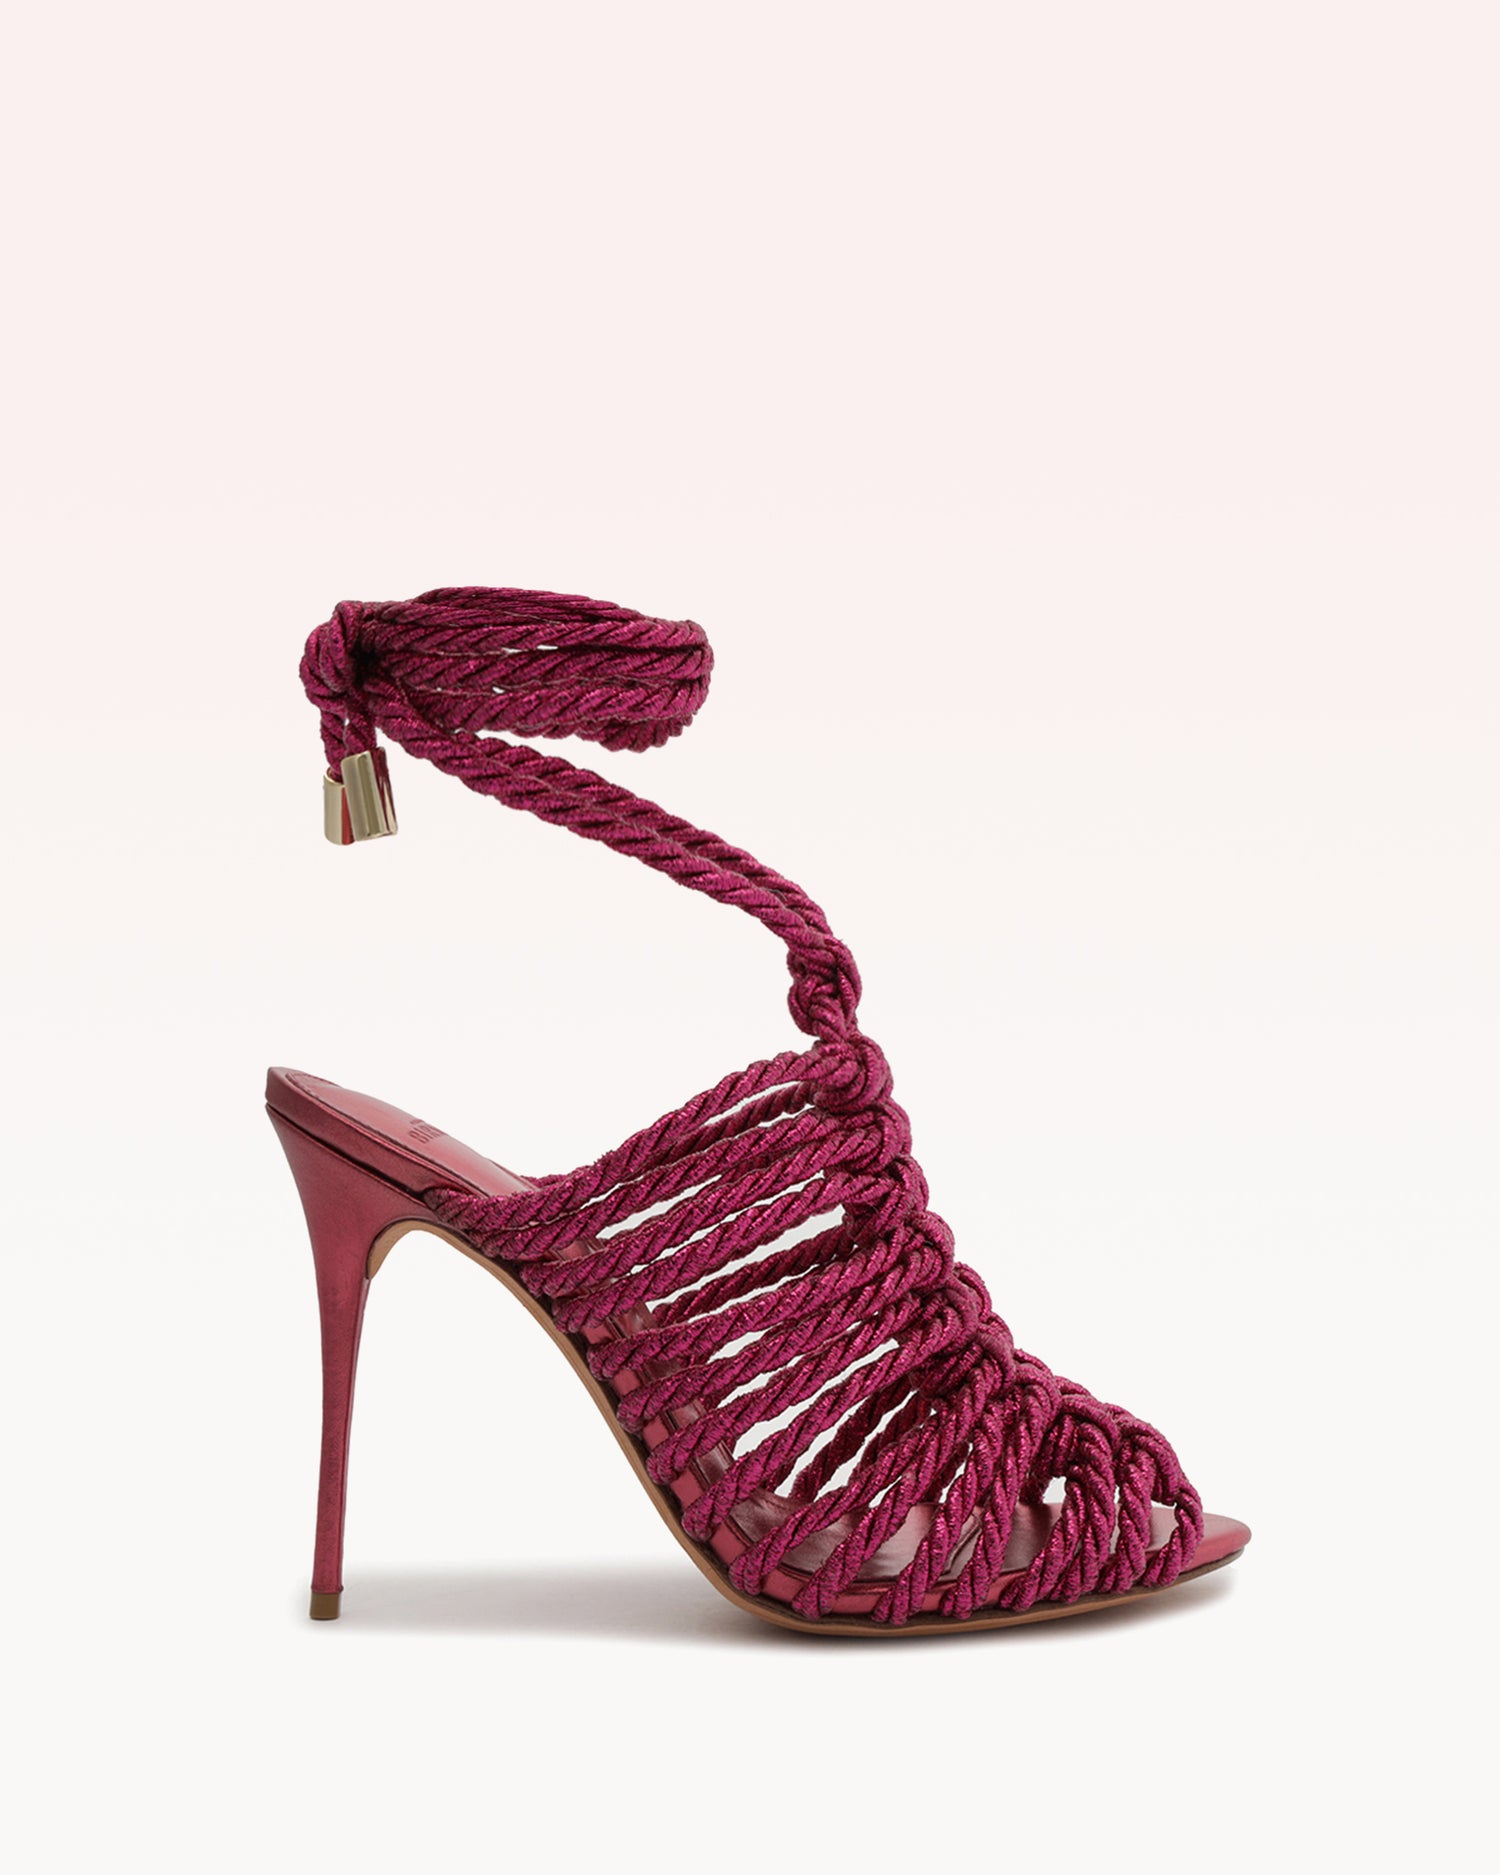 Barbara Lurex Pink Sandals S/23 35 Pink Lurex